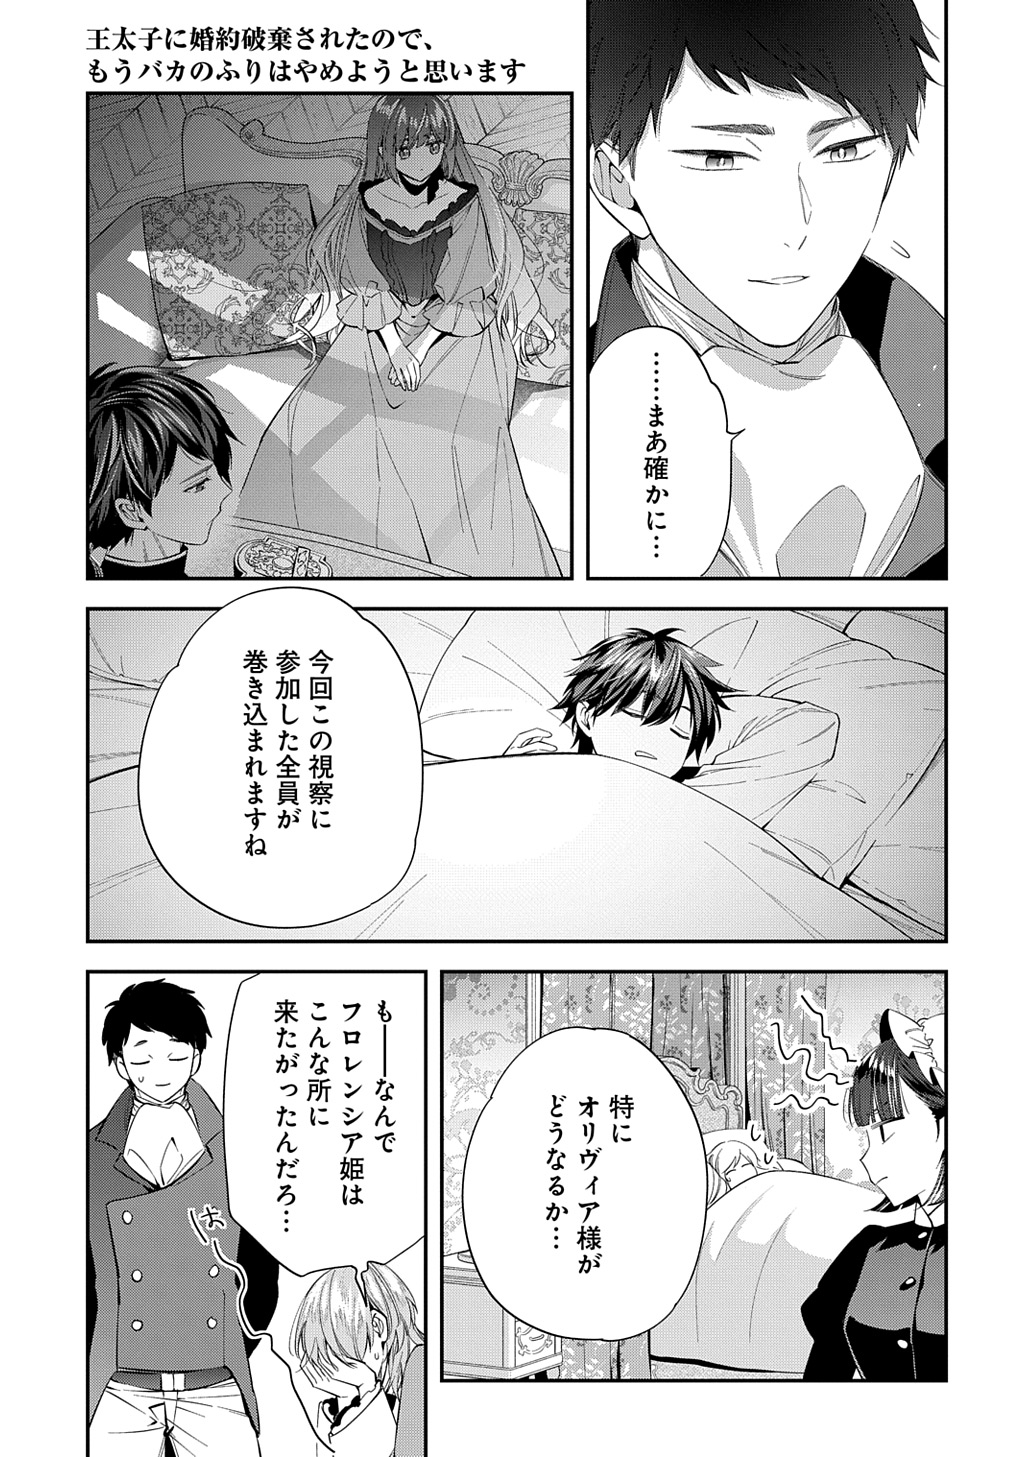 Outaishi ni Konyaku Hakisareta no de, Mou Baka no Furi wa Yameyou to Omoimasu - Chapter 23 - Page 25